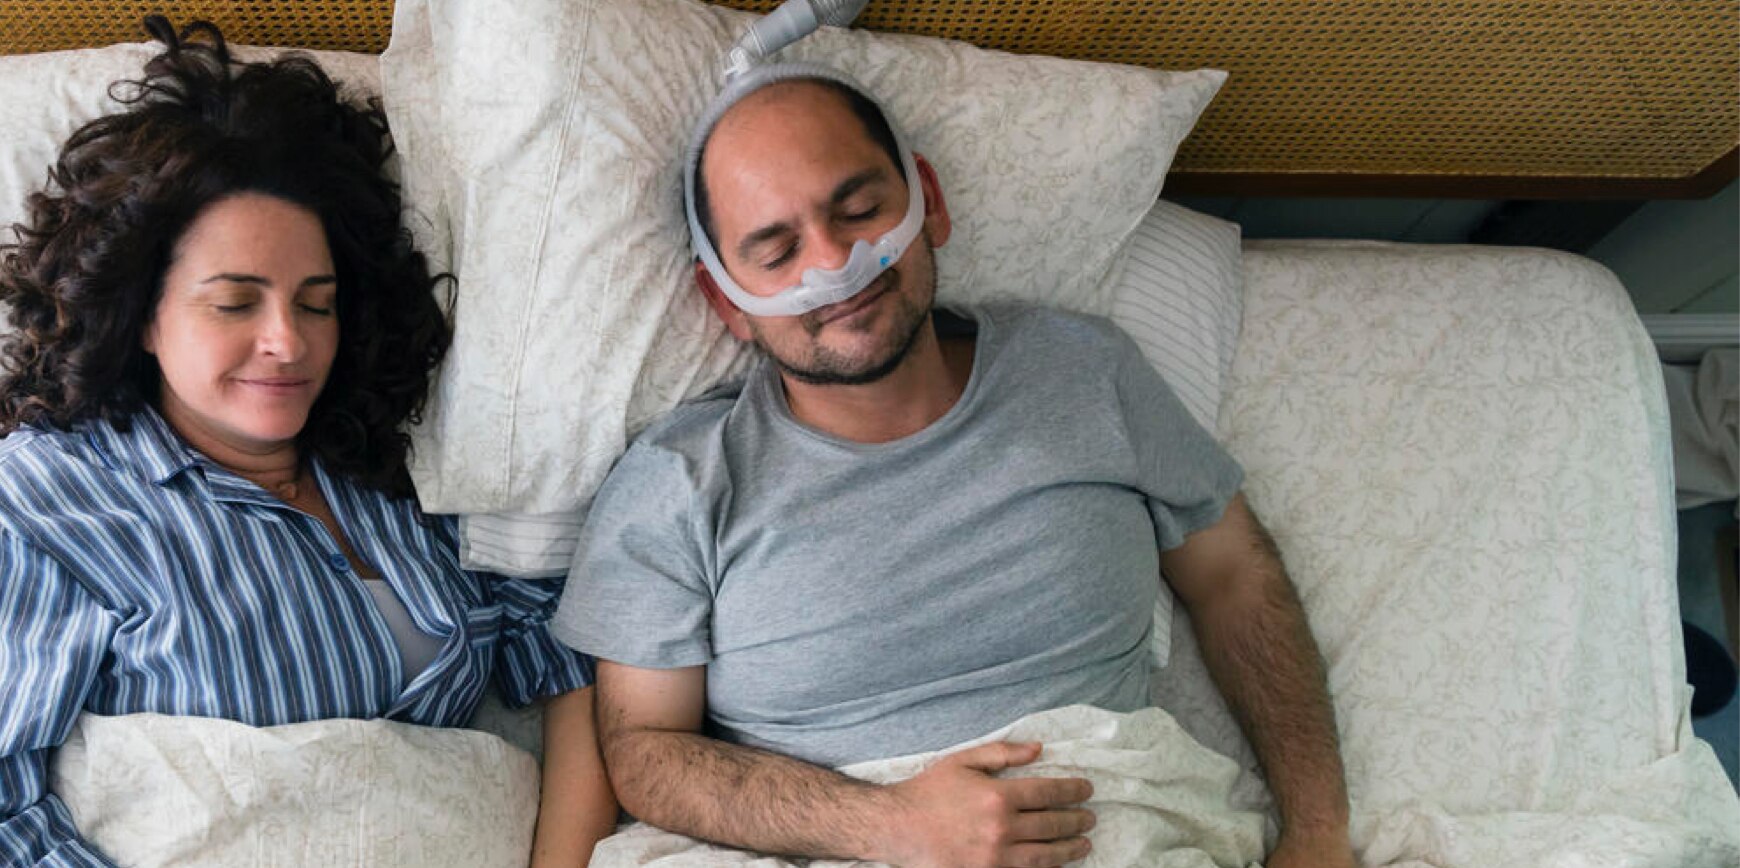 Logran curar apnea obstructiva del sueño por primera vez